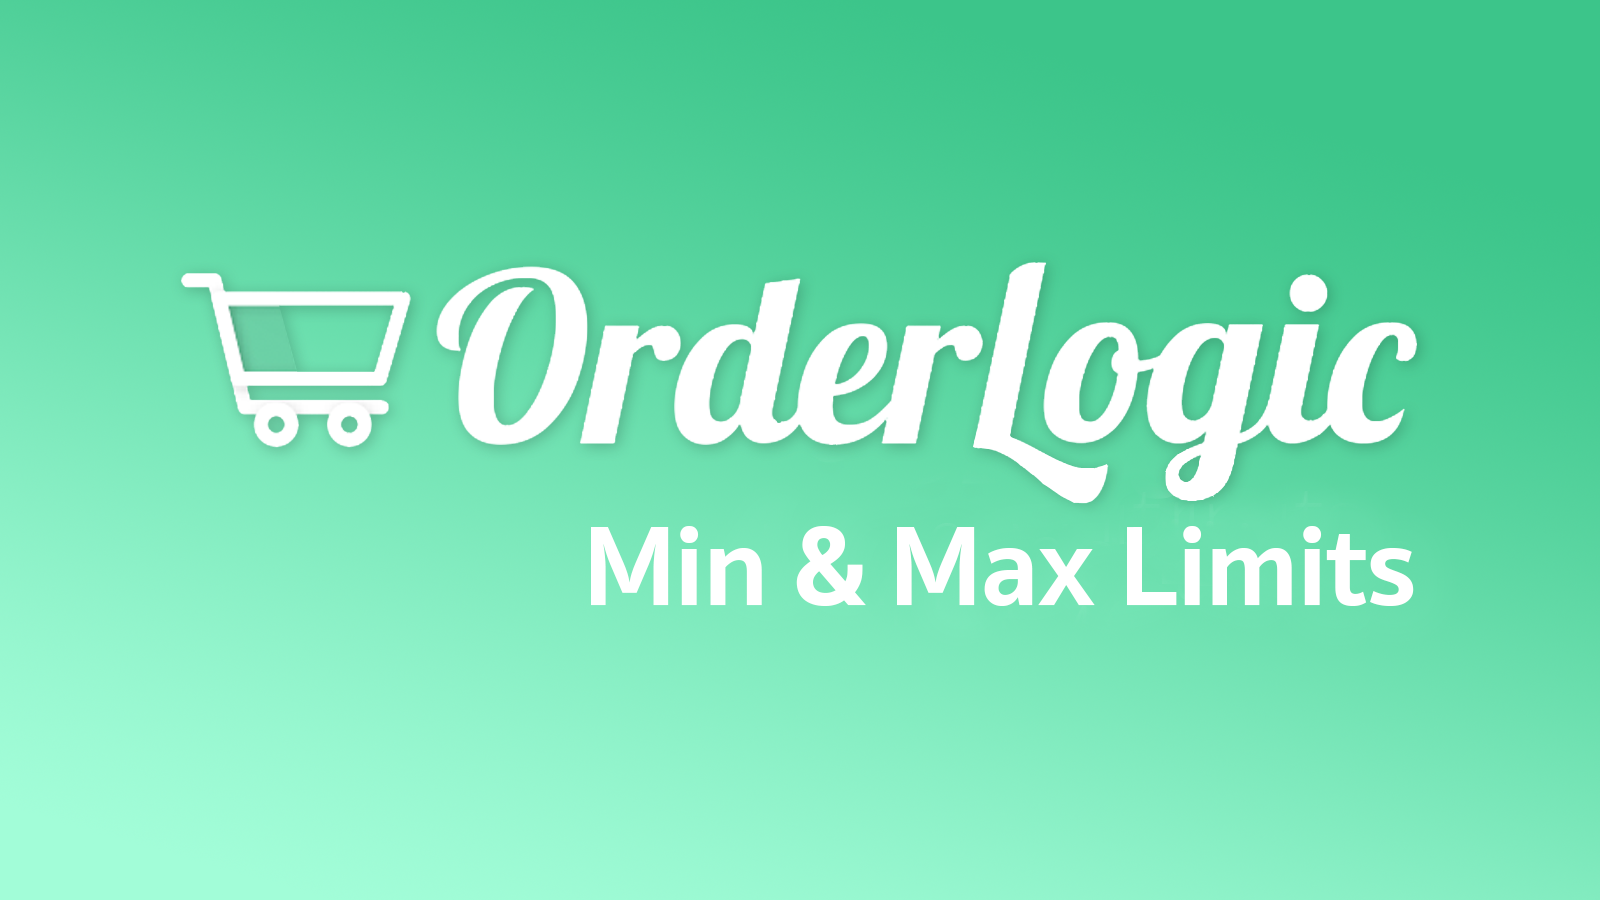 OrderLogic Min & Max Limits